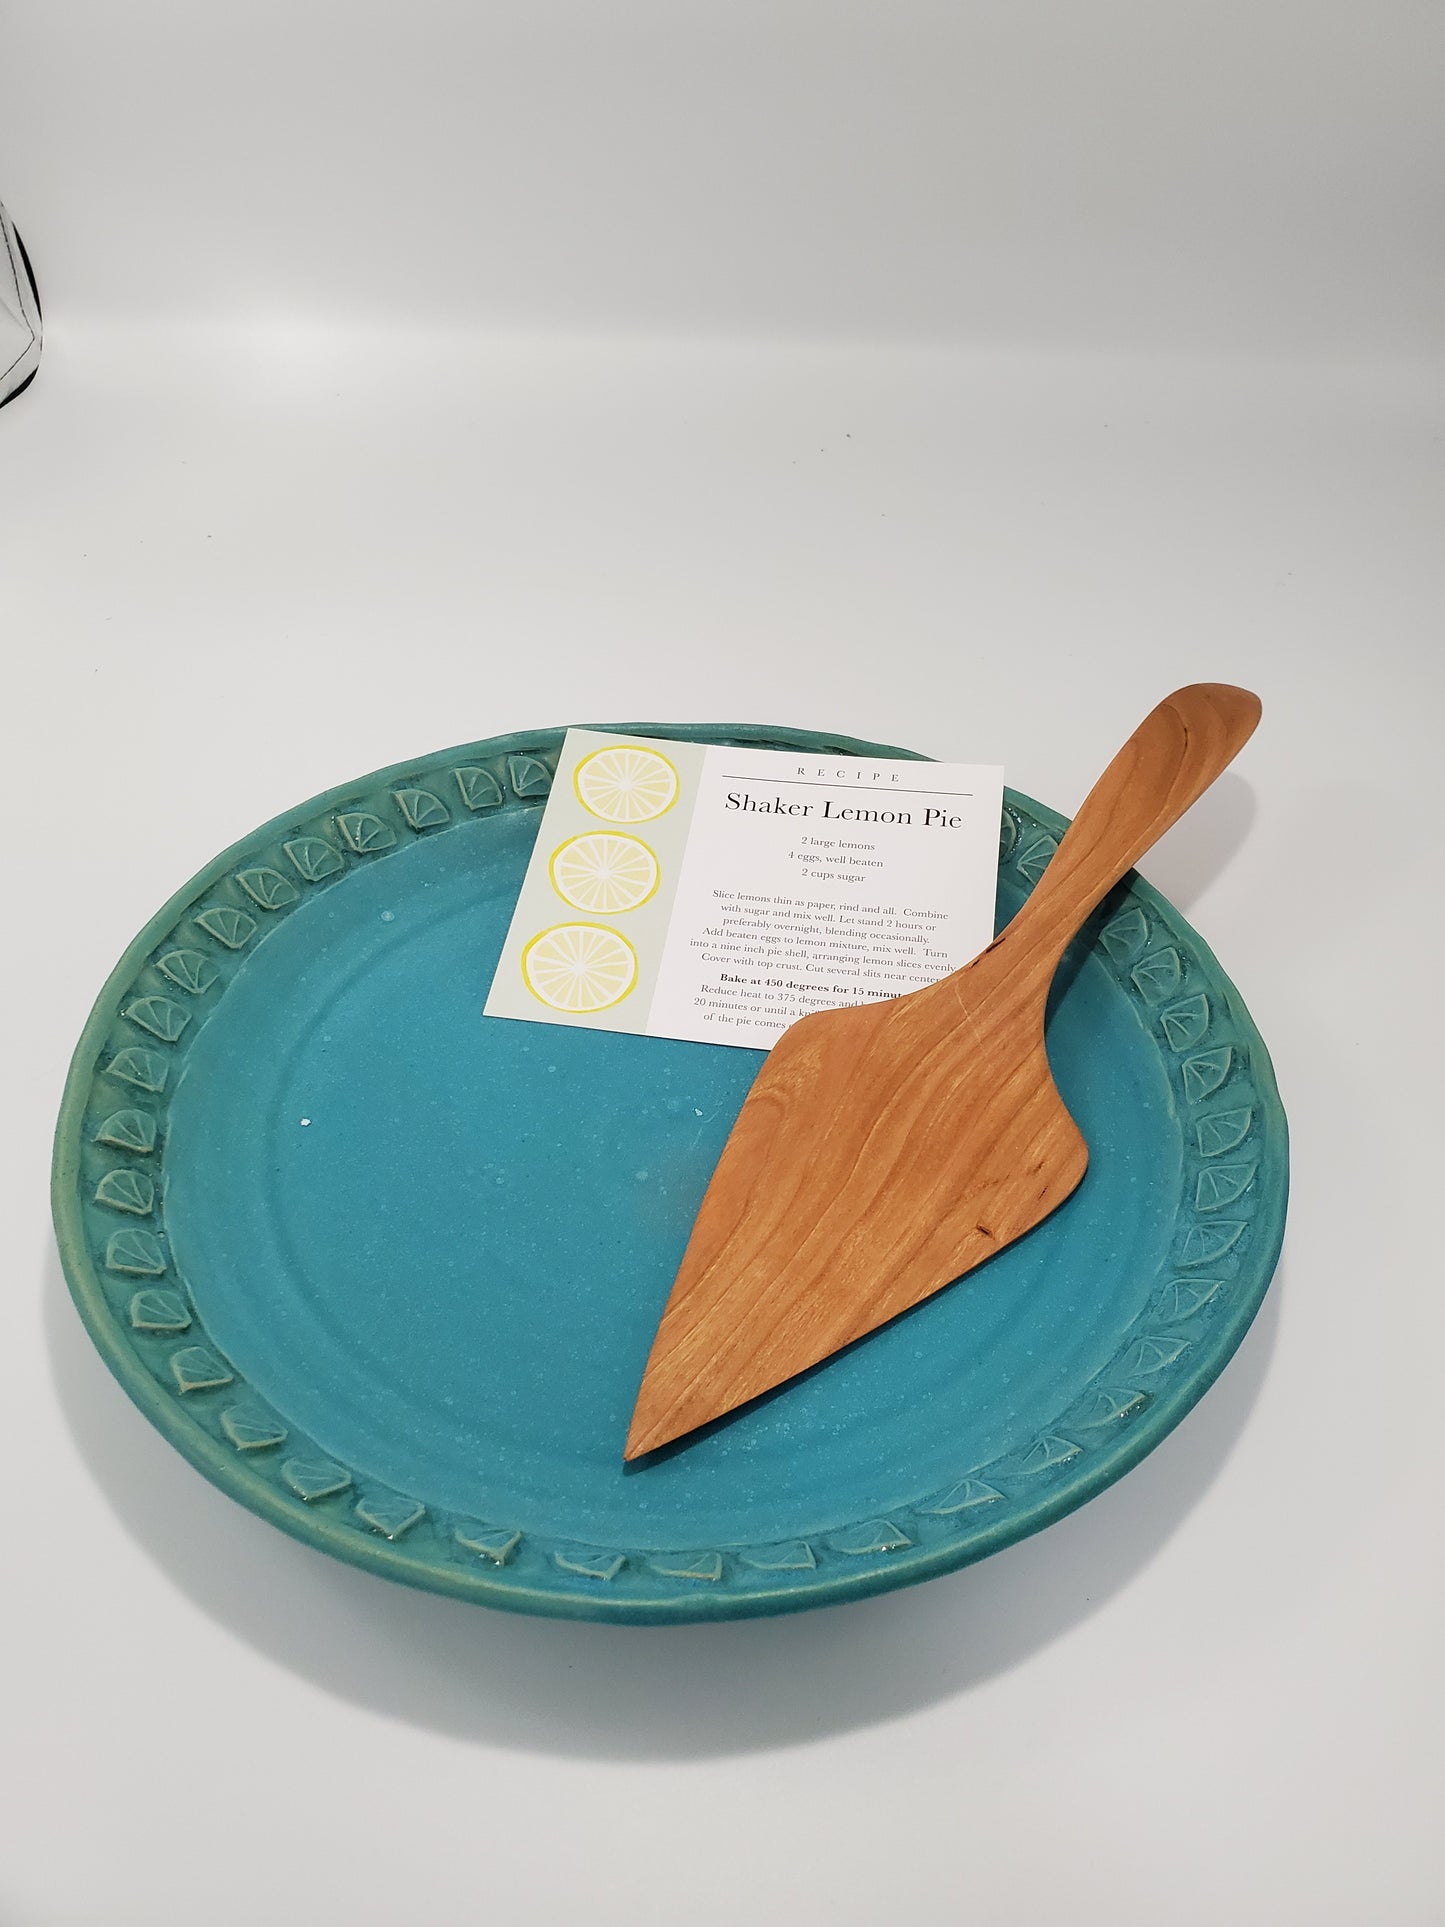 Shaker Lemon Pie Plate with Recipe Card